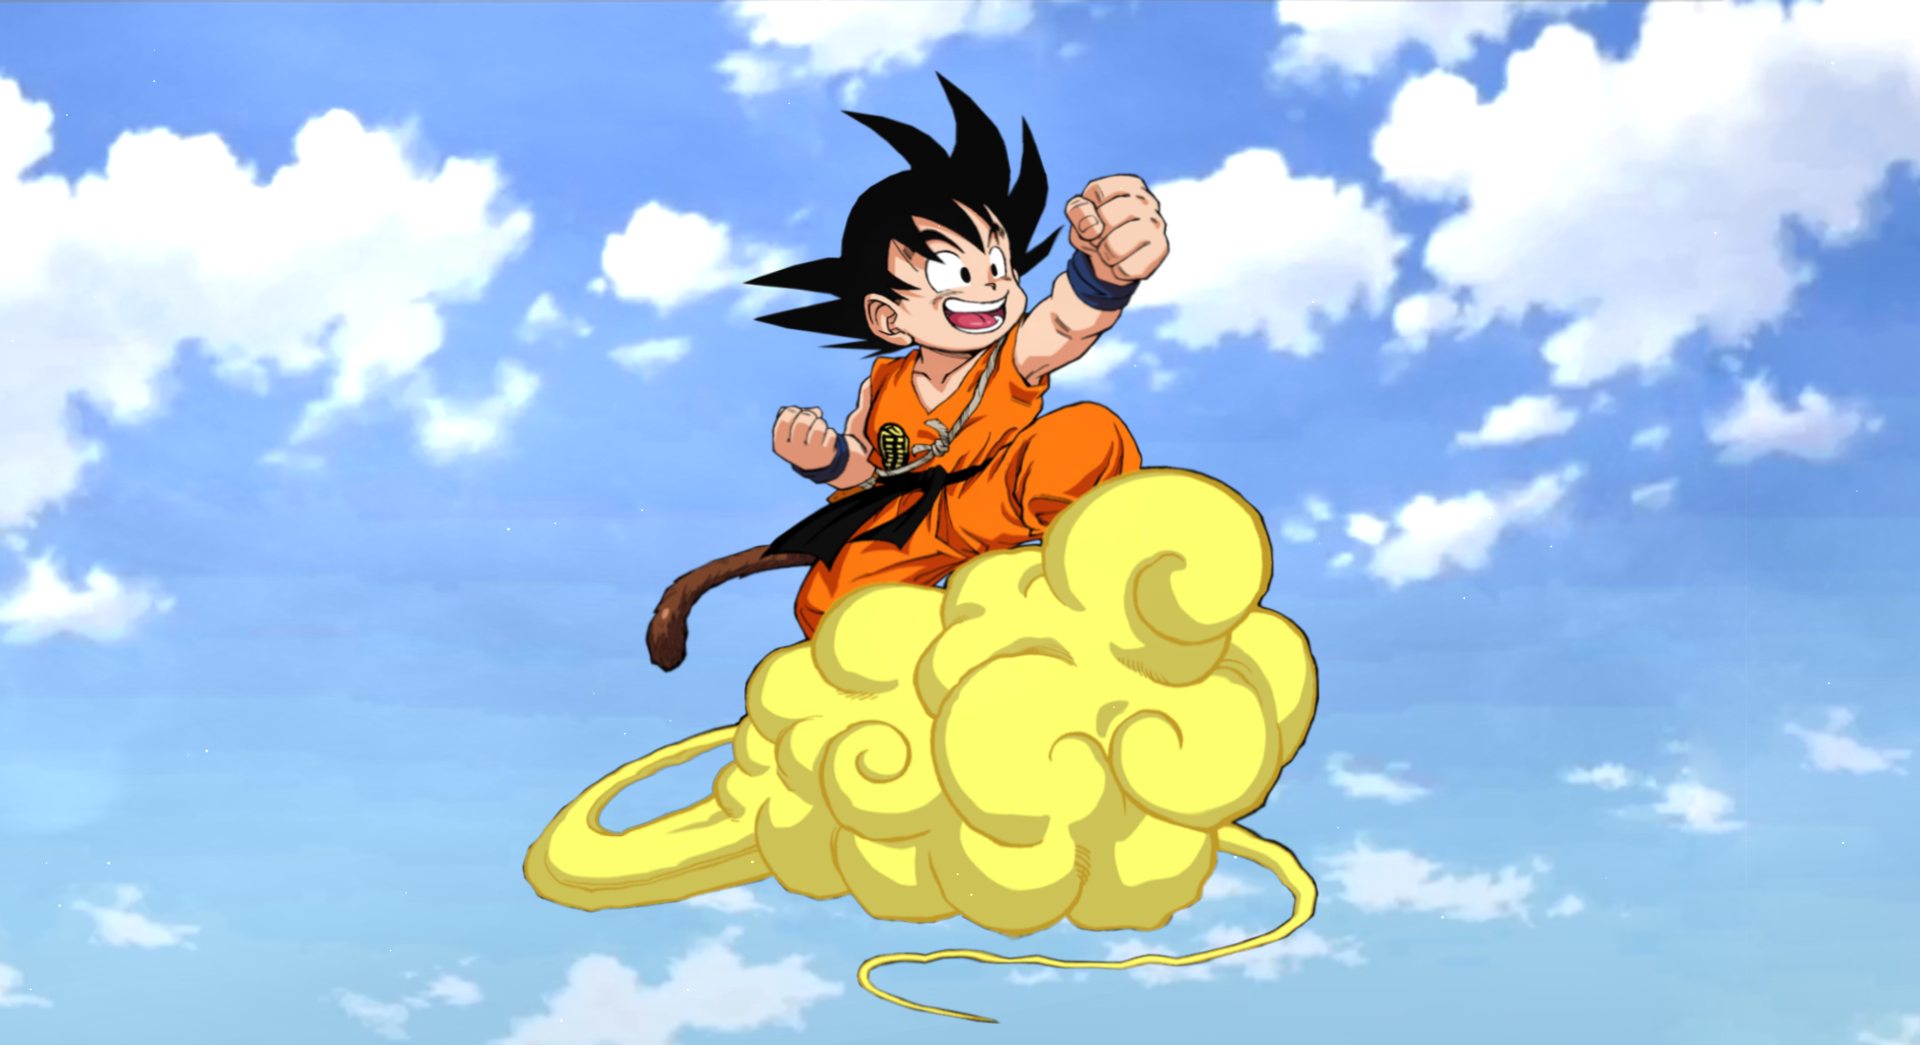 Boy Goku Nimbus Dragon Ball Z live wallpaper [DOWNLOAD FREE]